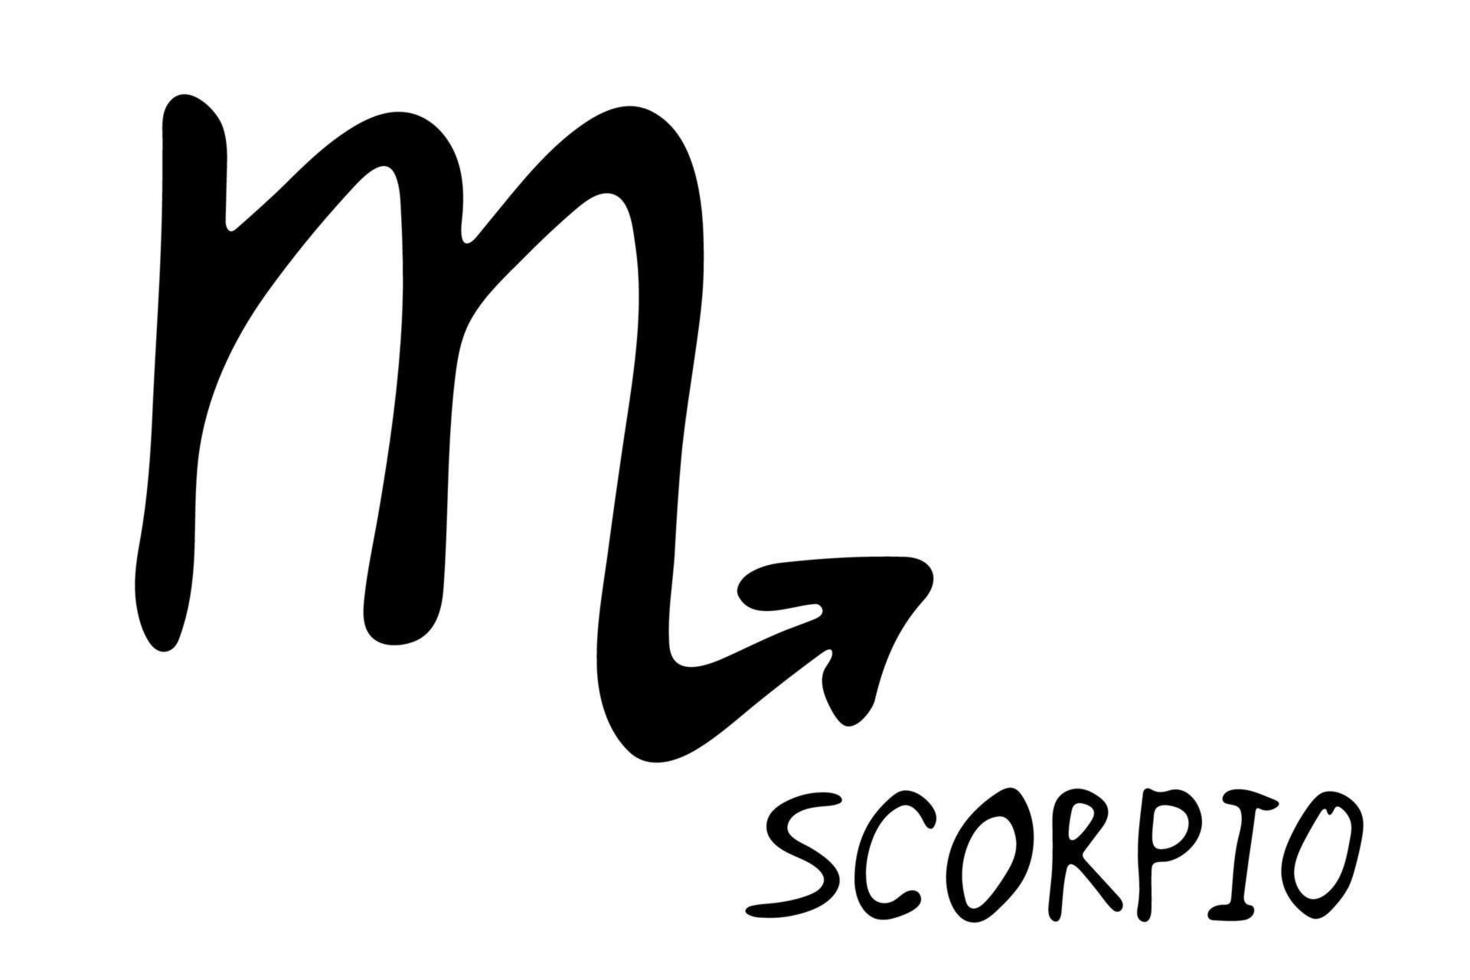 mão desenhada escorpião signo do zodíaco símbolo esotérico doodle elemento de clipart de astrologia para design vetor